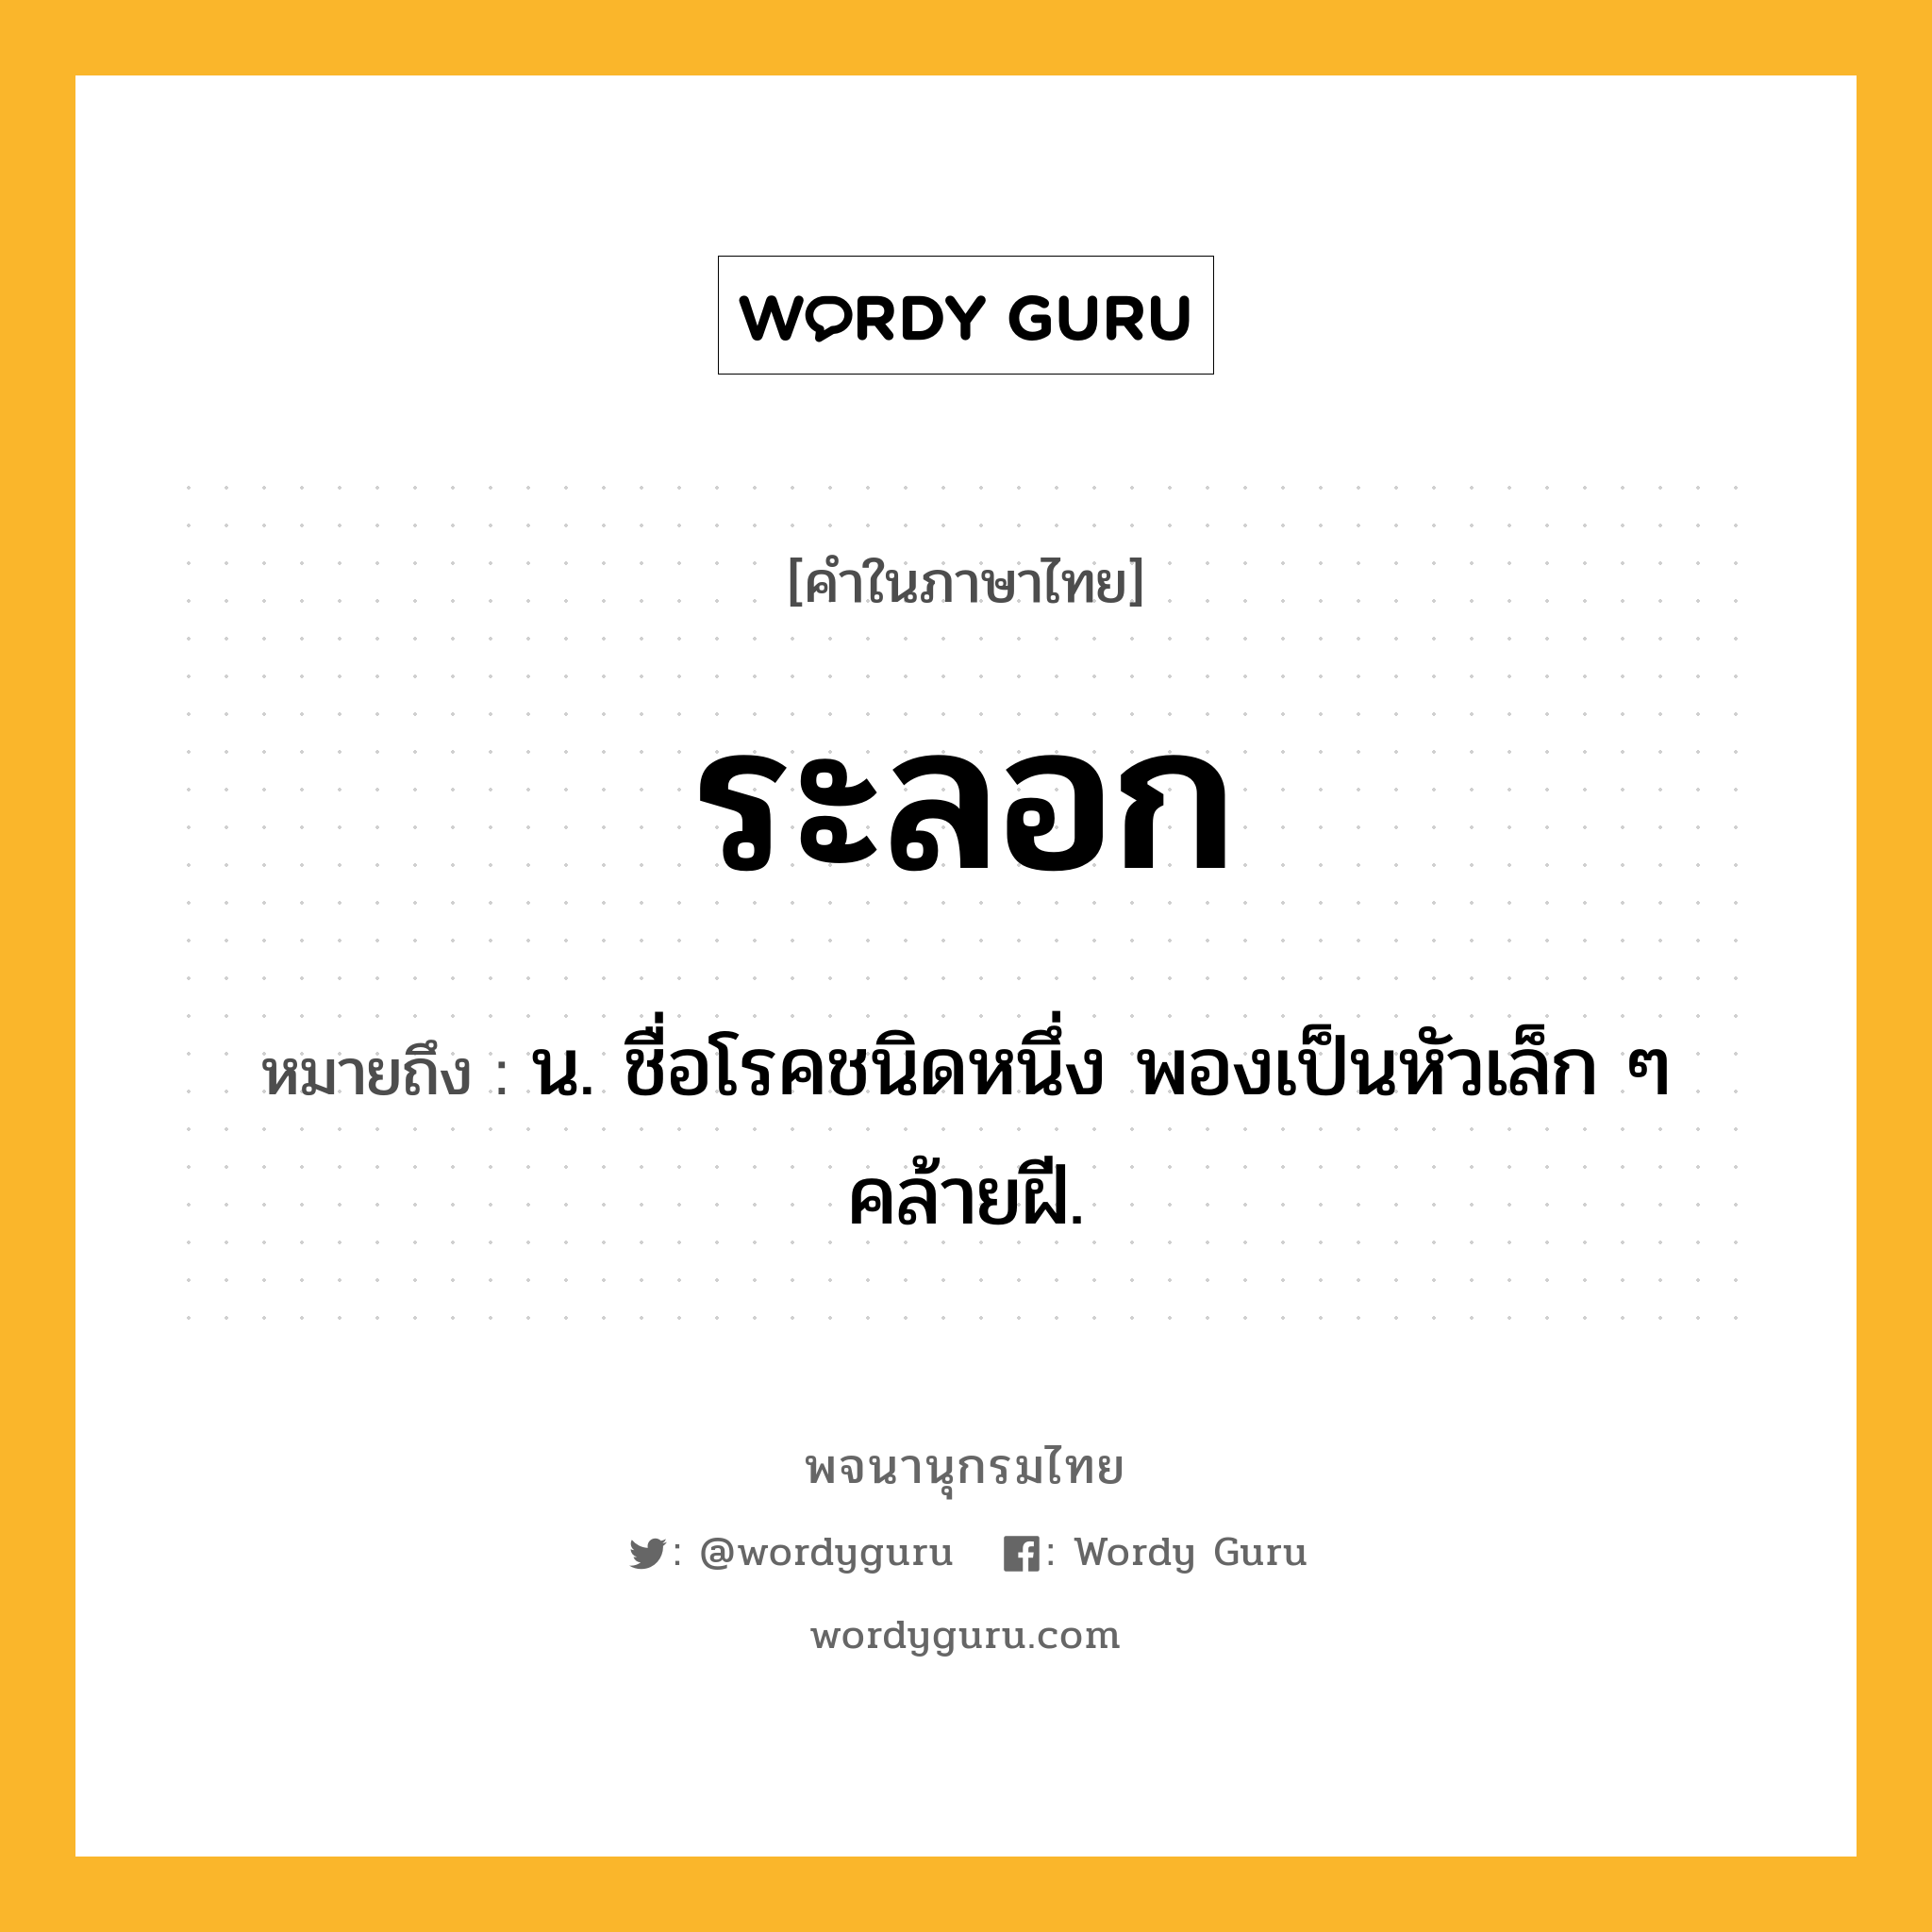 ระลอก ความหมาย หมายถึงอะไร?, คำในภาษาไทย ระลอก หมายถึง น. ชื่อโรคชนิดหนึ่ง พองเป็นหัวเล็ก ๆ คล้ายฝี.